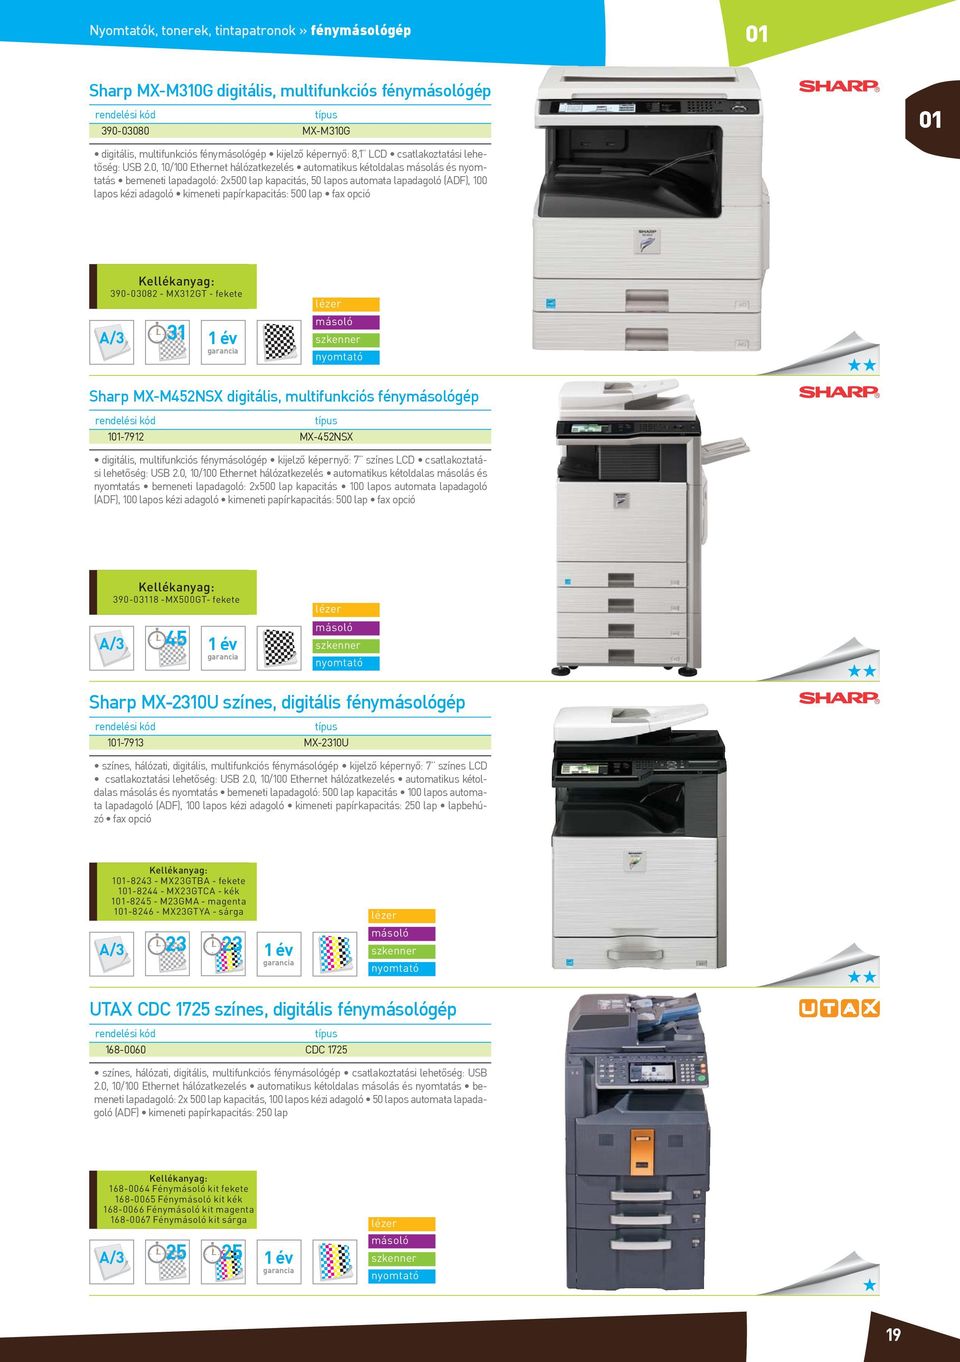 papírkapacitás: 500 lap fax opció 390-03082 - MX312GT - fekete A/3 31 1 év szkenner Sharp MX-M452NSX digitális, multifunkciós fénygép 1-7912 MX-452NSX digitális, multifunkciós fénygép kijelző